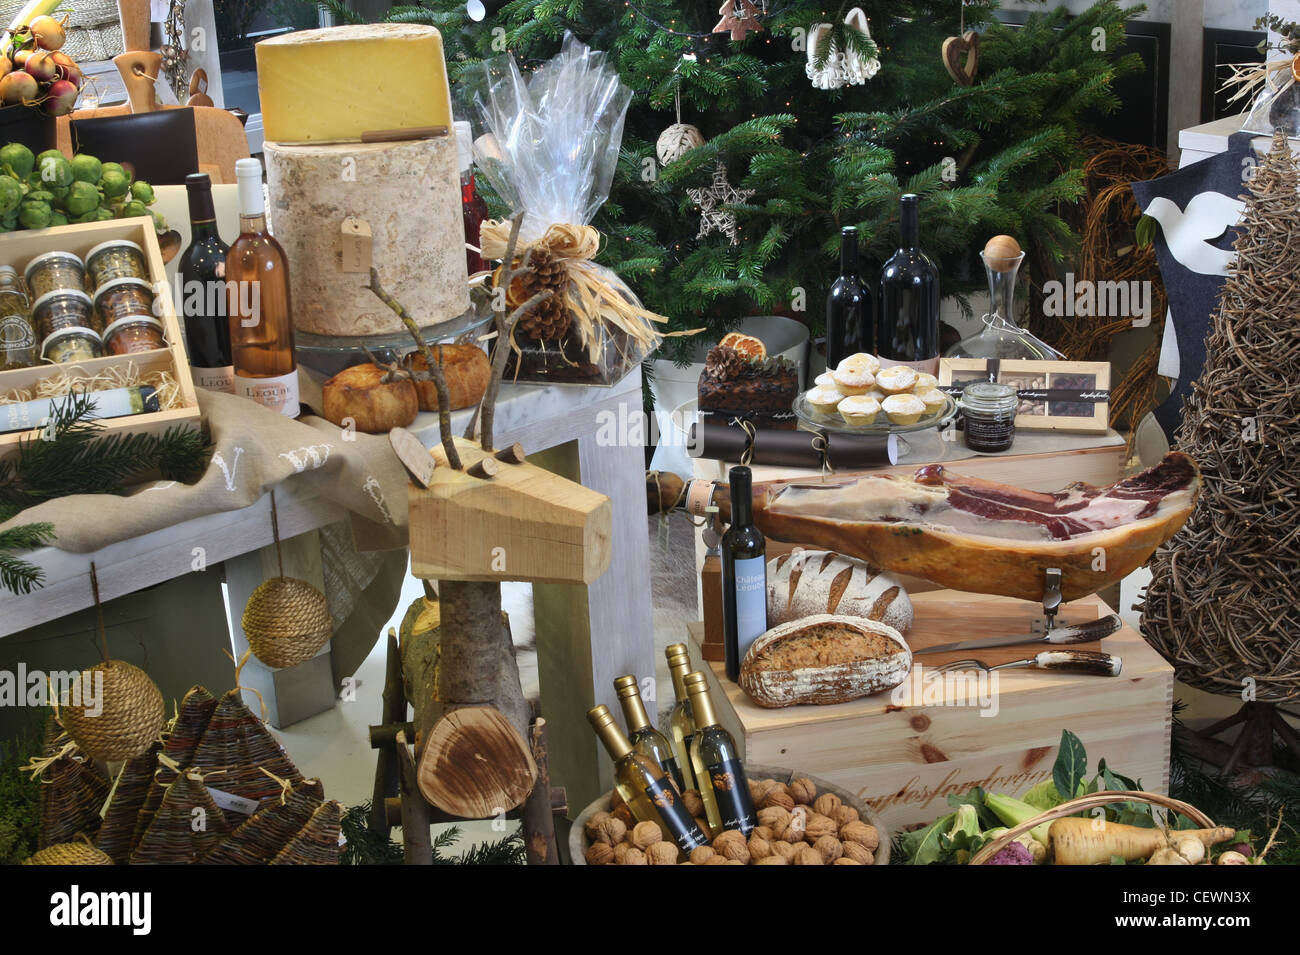 Un Natale la visualizzazione di vari prodotti alimentari e vino, rustico decorazioni di Natale compresa una renna in legno e un albero di natale Foto Stock